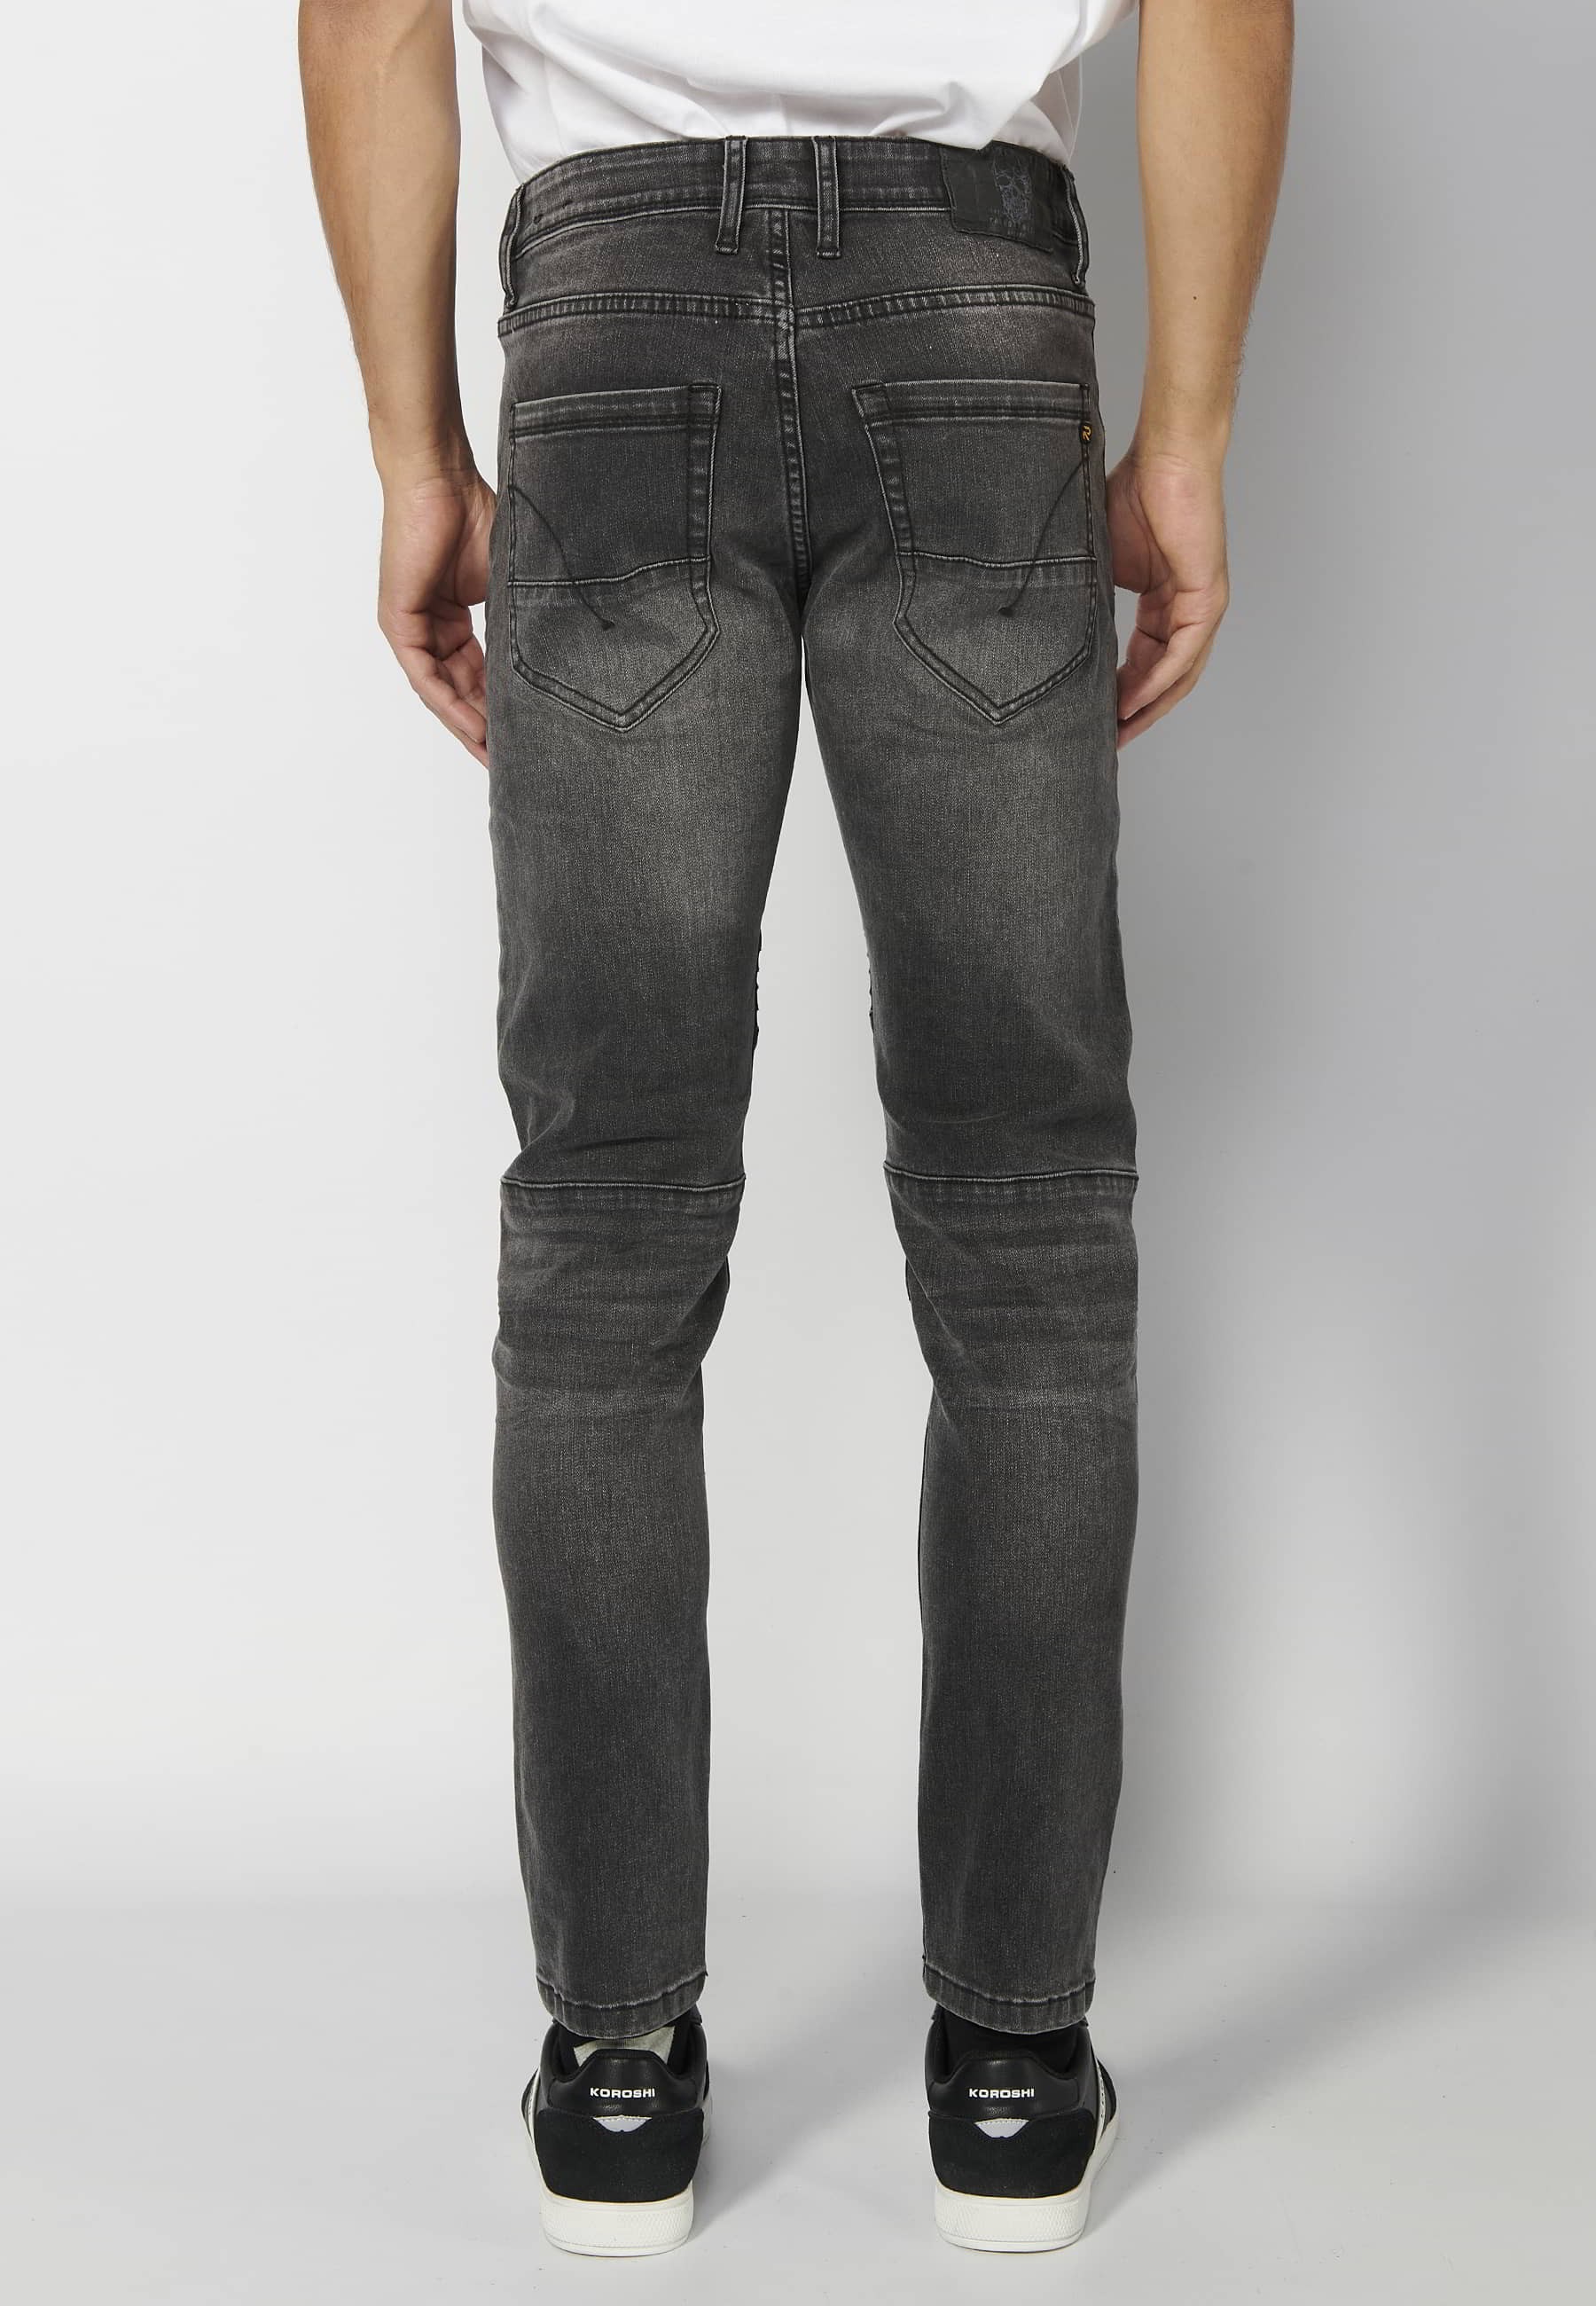 Pantalon long coupe skinny, à cinq poches, couleur noir usé pour Homme 7